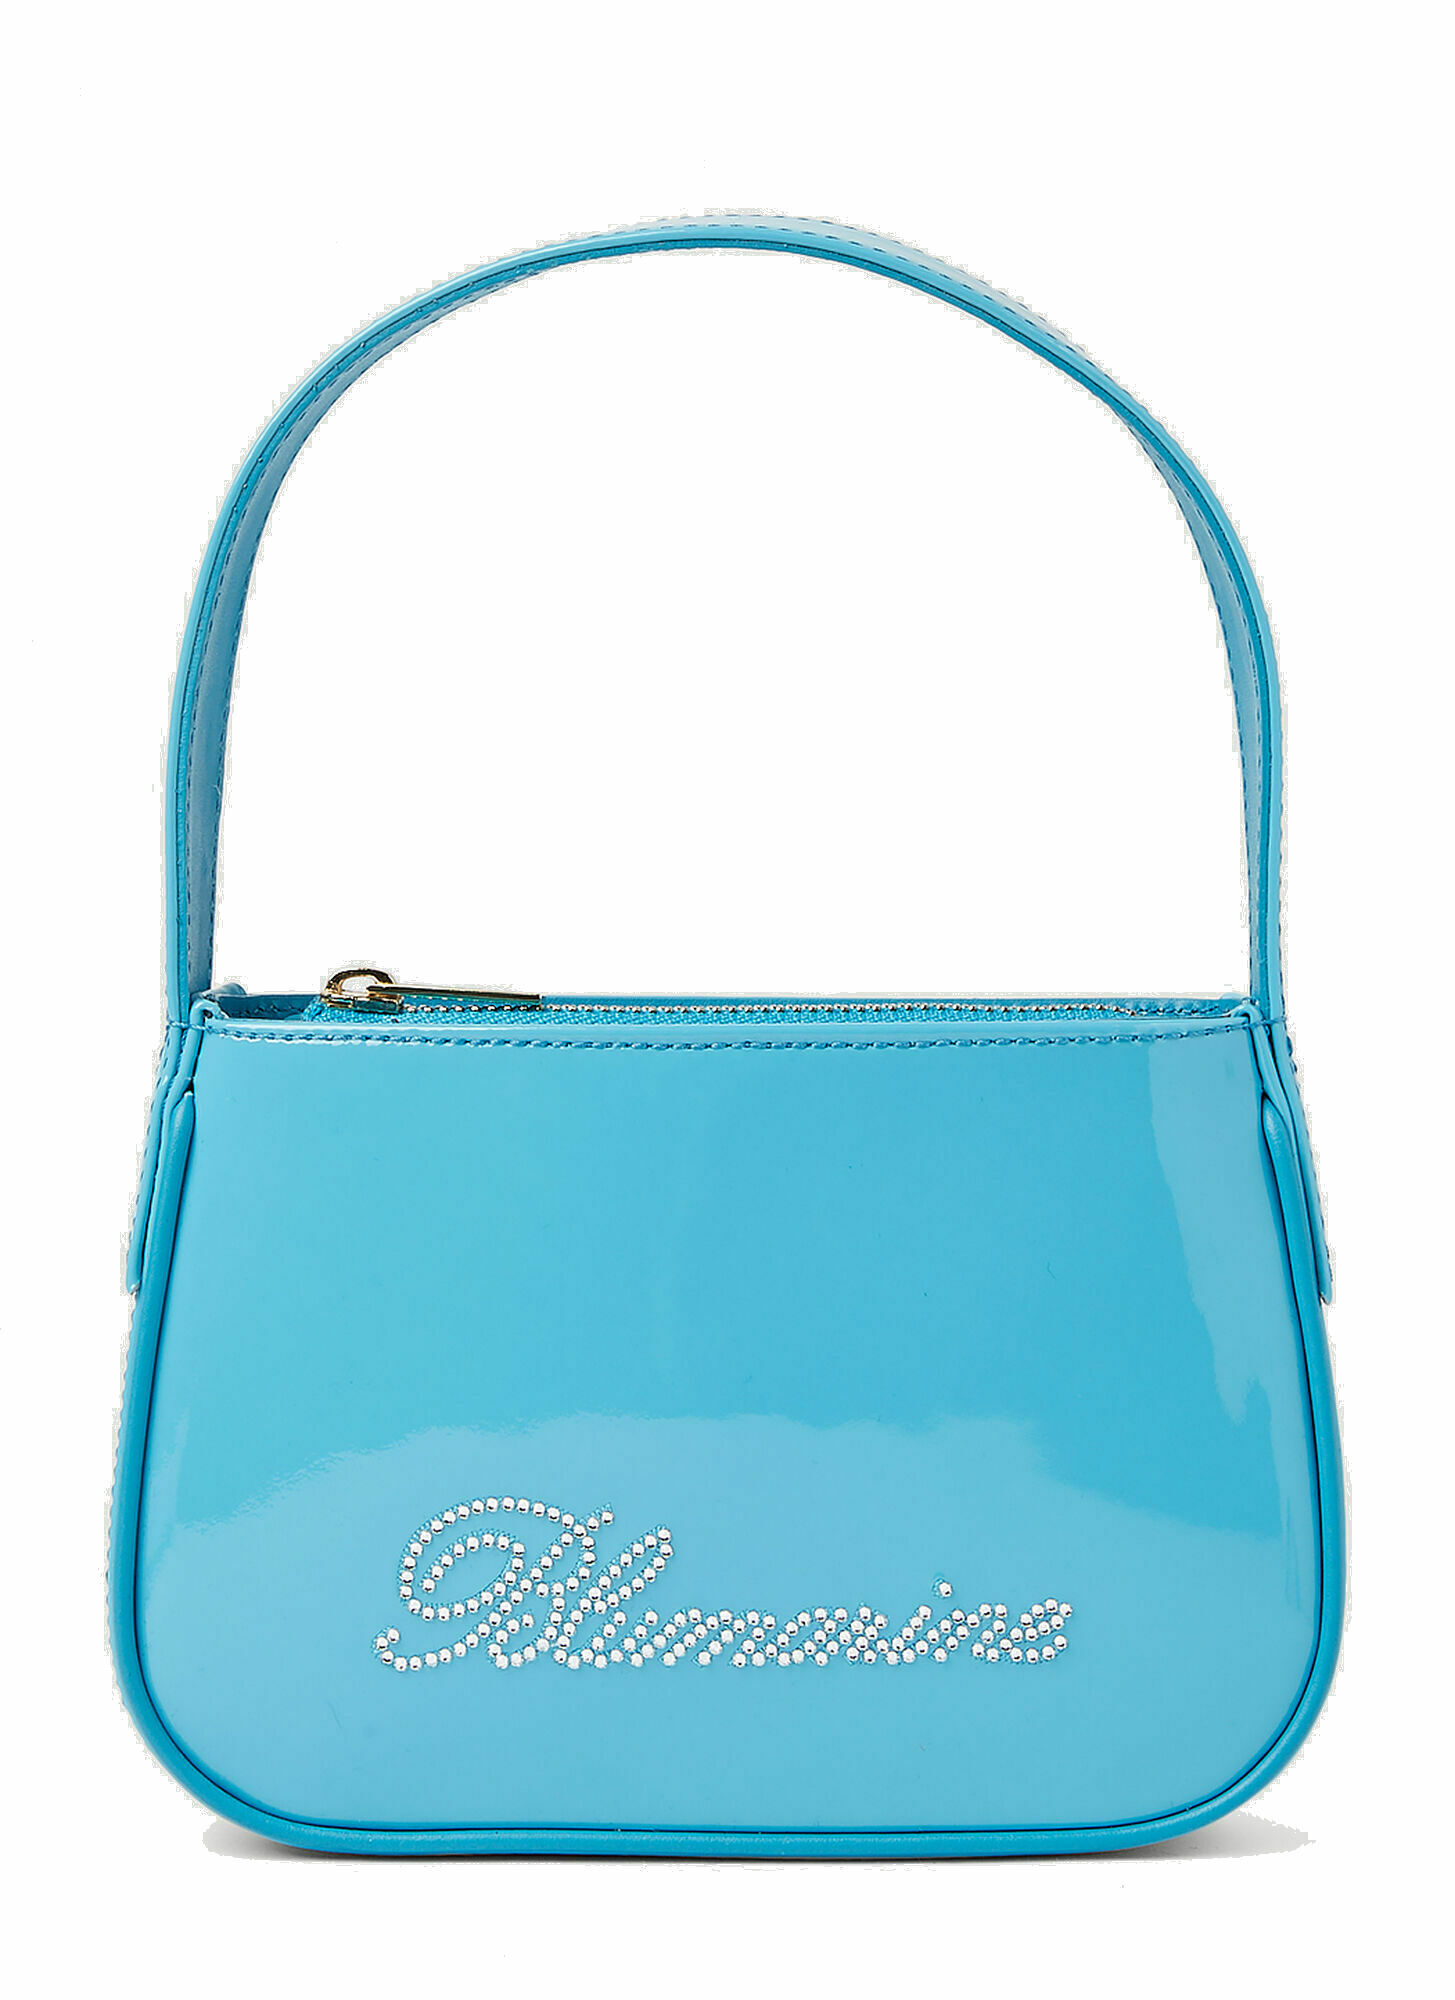 Blumarine - Logo Embellished Shoulder Bag in Light Blue Blumarine